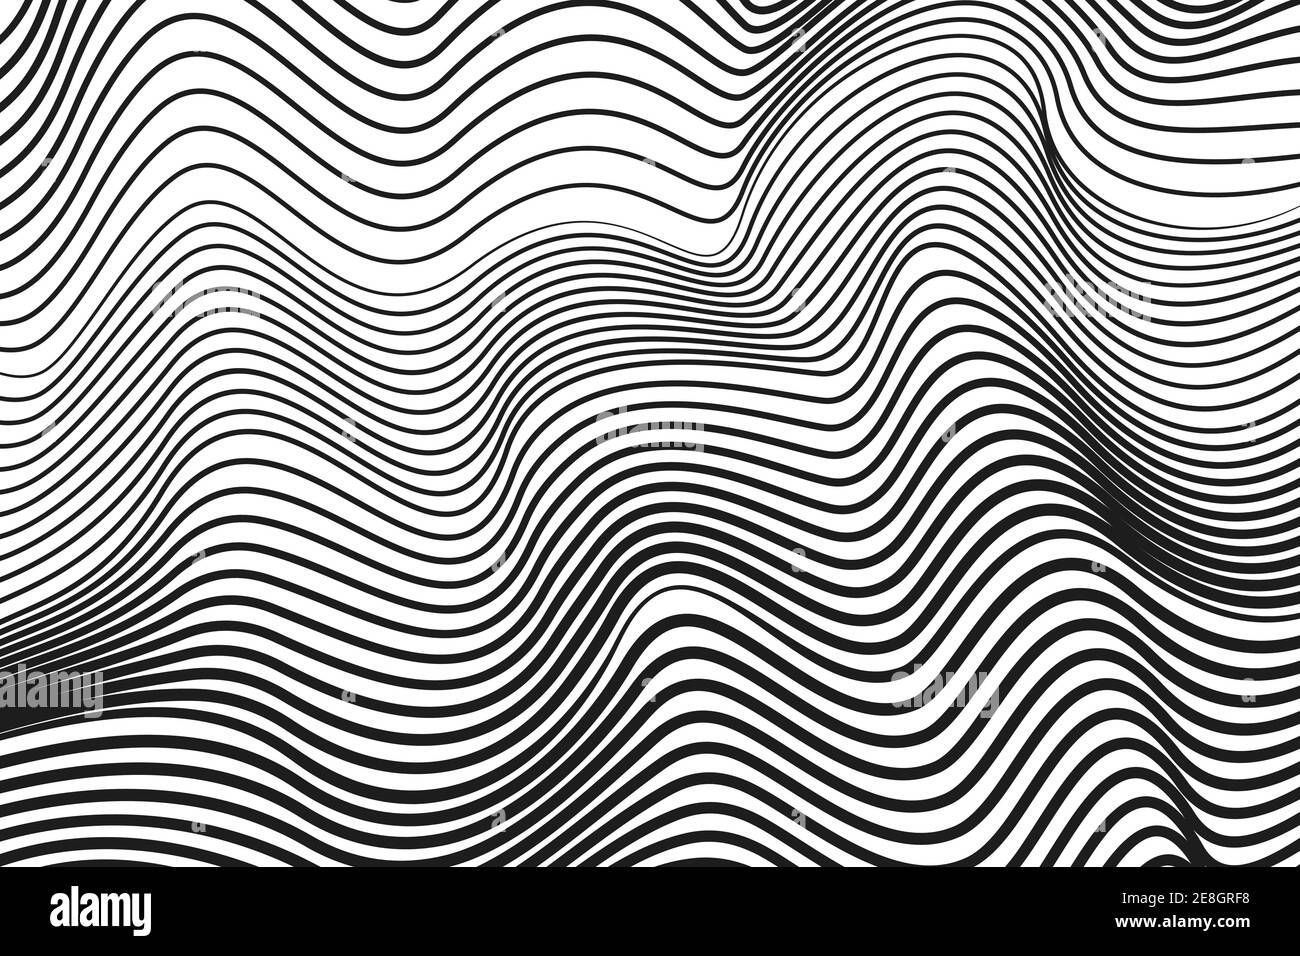 Curvas de rizado negras, fondo blanco. Radio monocroma, ondas de sonido. Diseño de rayas de tecnología abstracta. Vector diseño de arte de línea moderna. EPS10 Ilustración del Vector